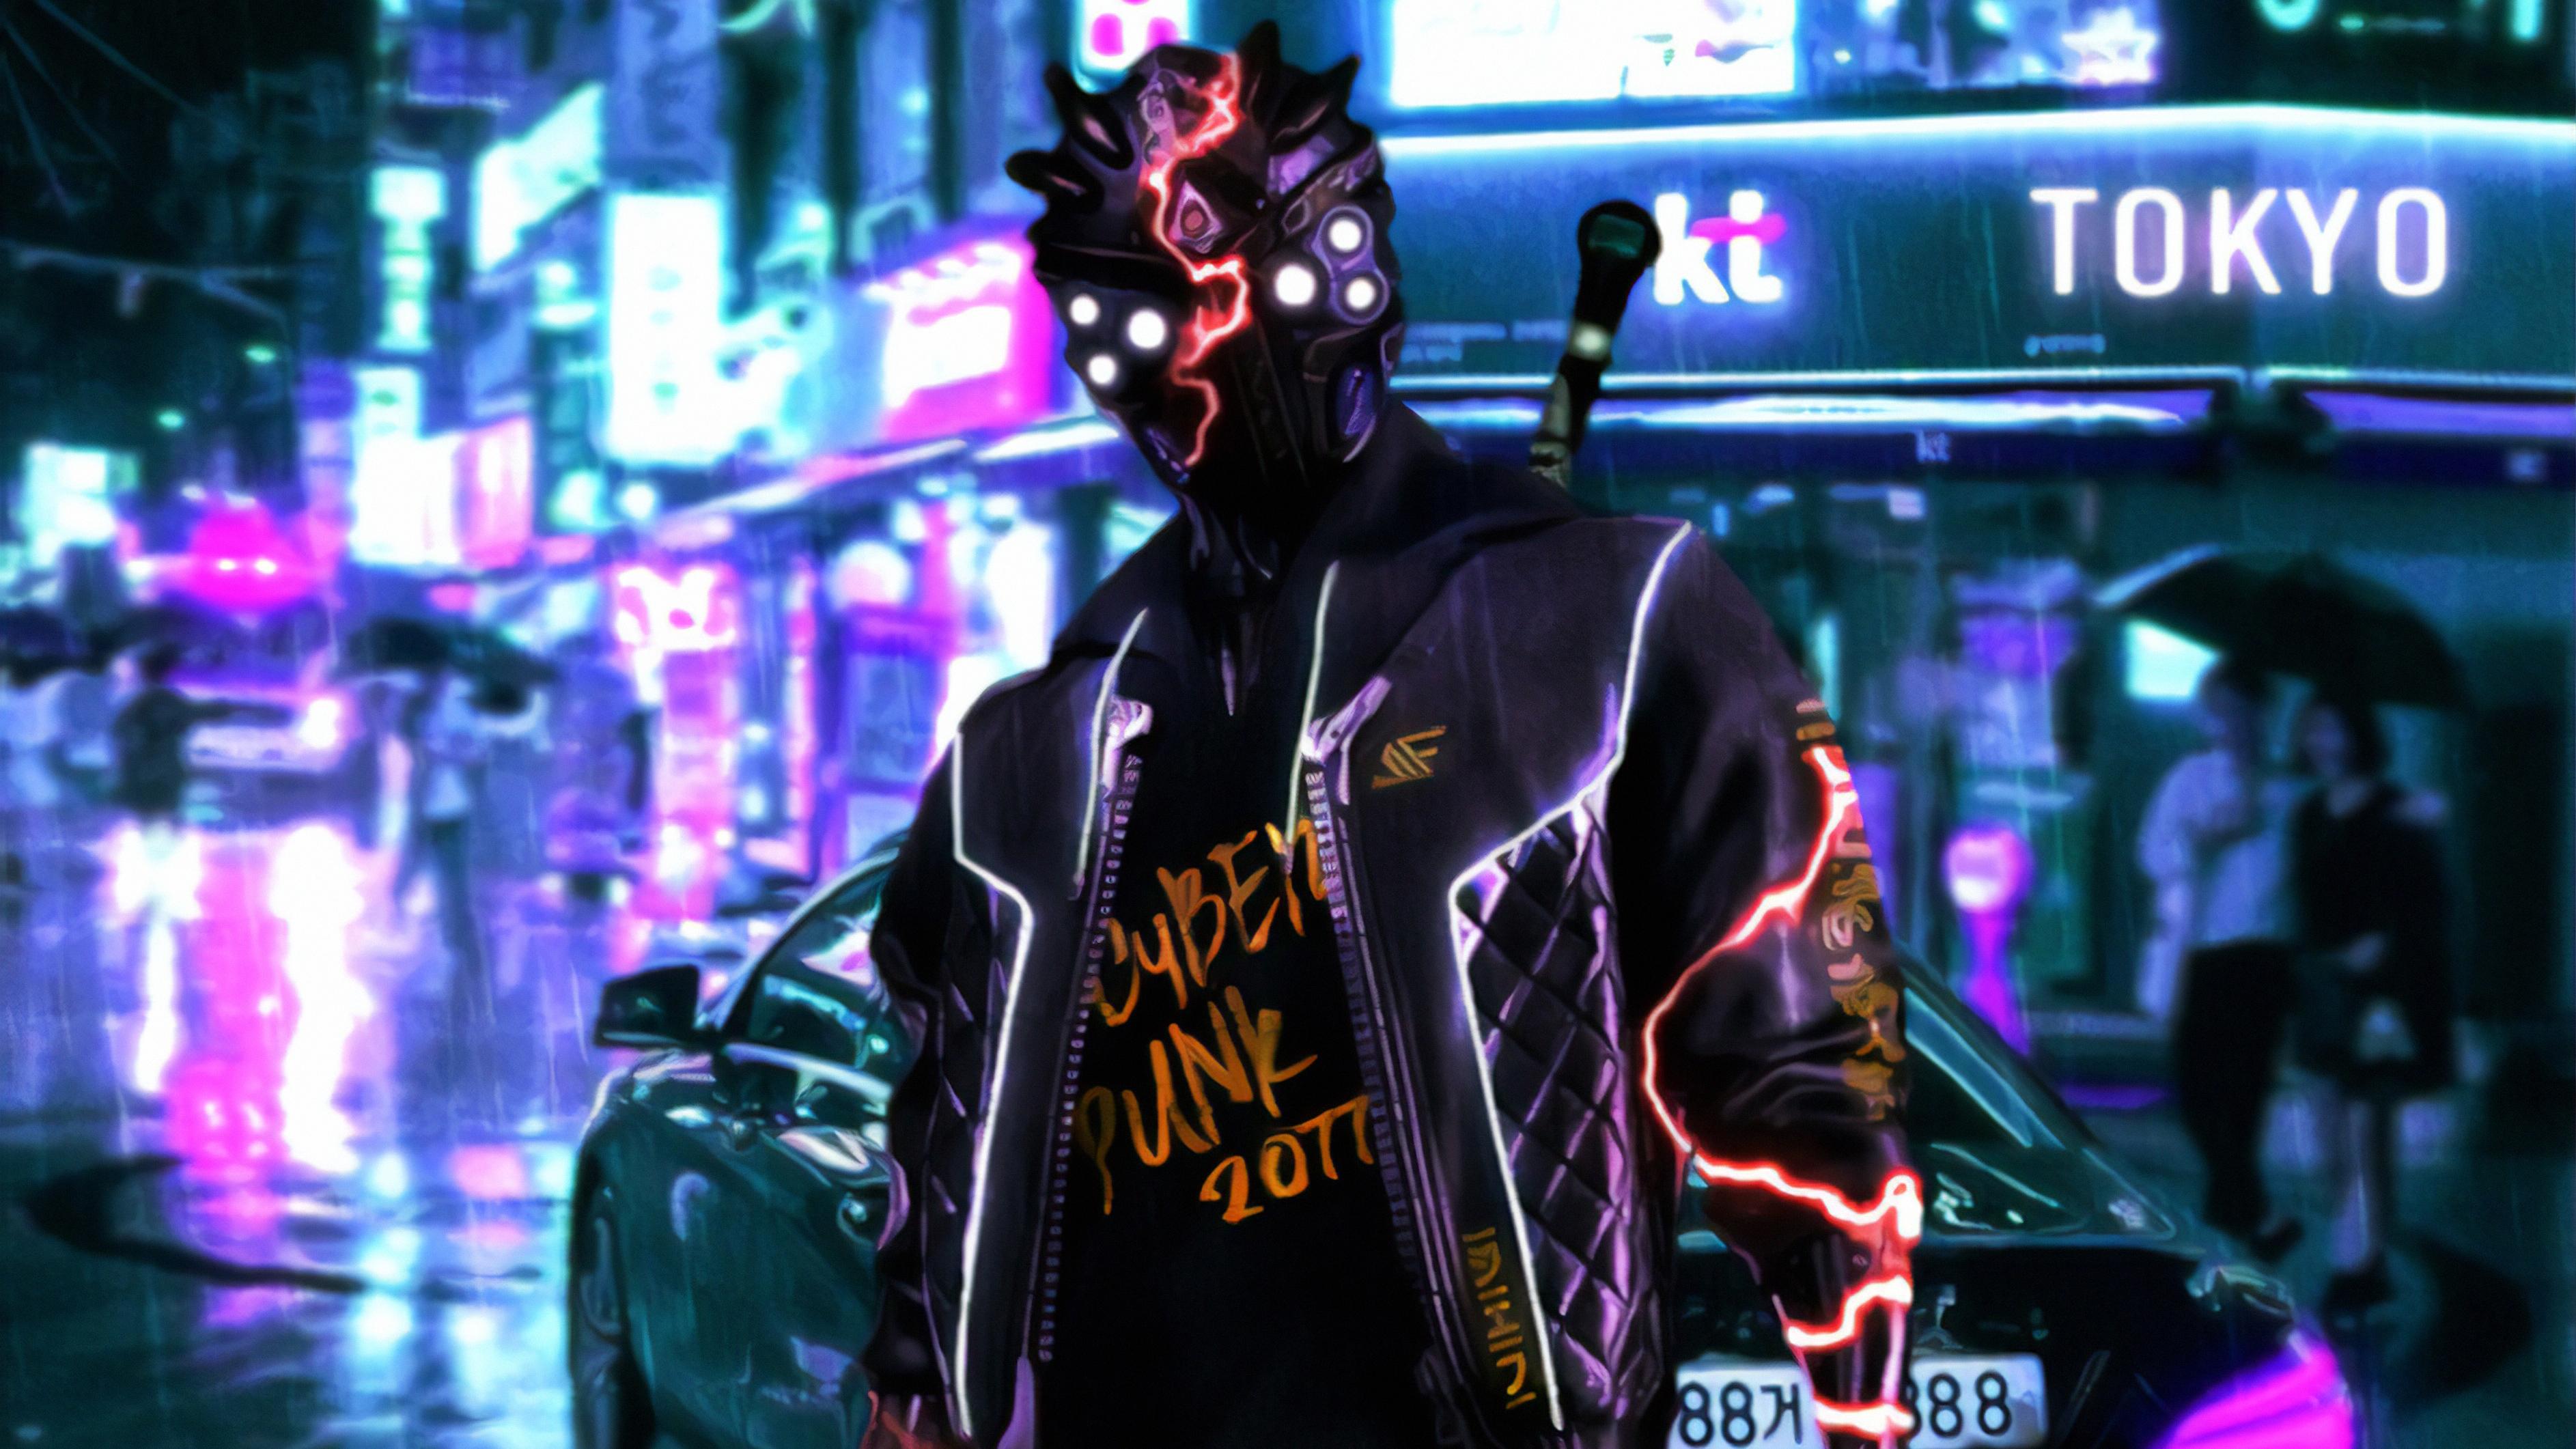 3772 x 2122 · jpeg - Cyberpunk 2077 Tokyo Street 4k, HD Games, 4k Wallpapers, Images ...